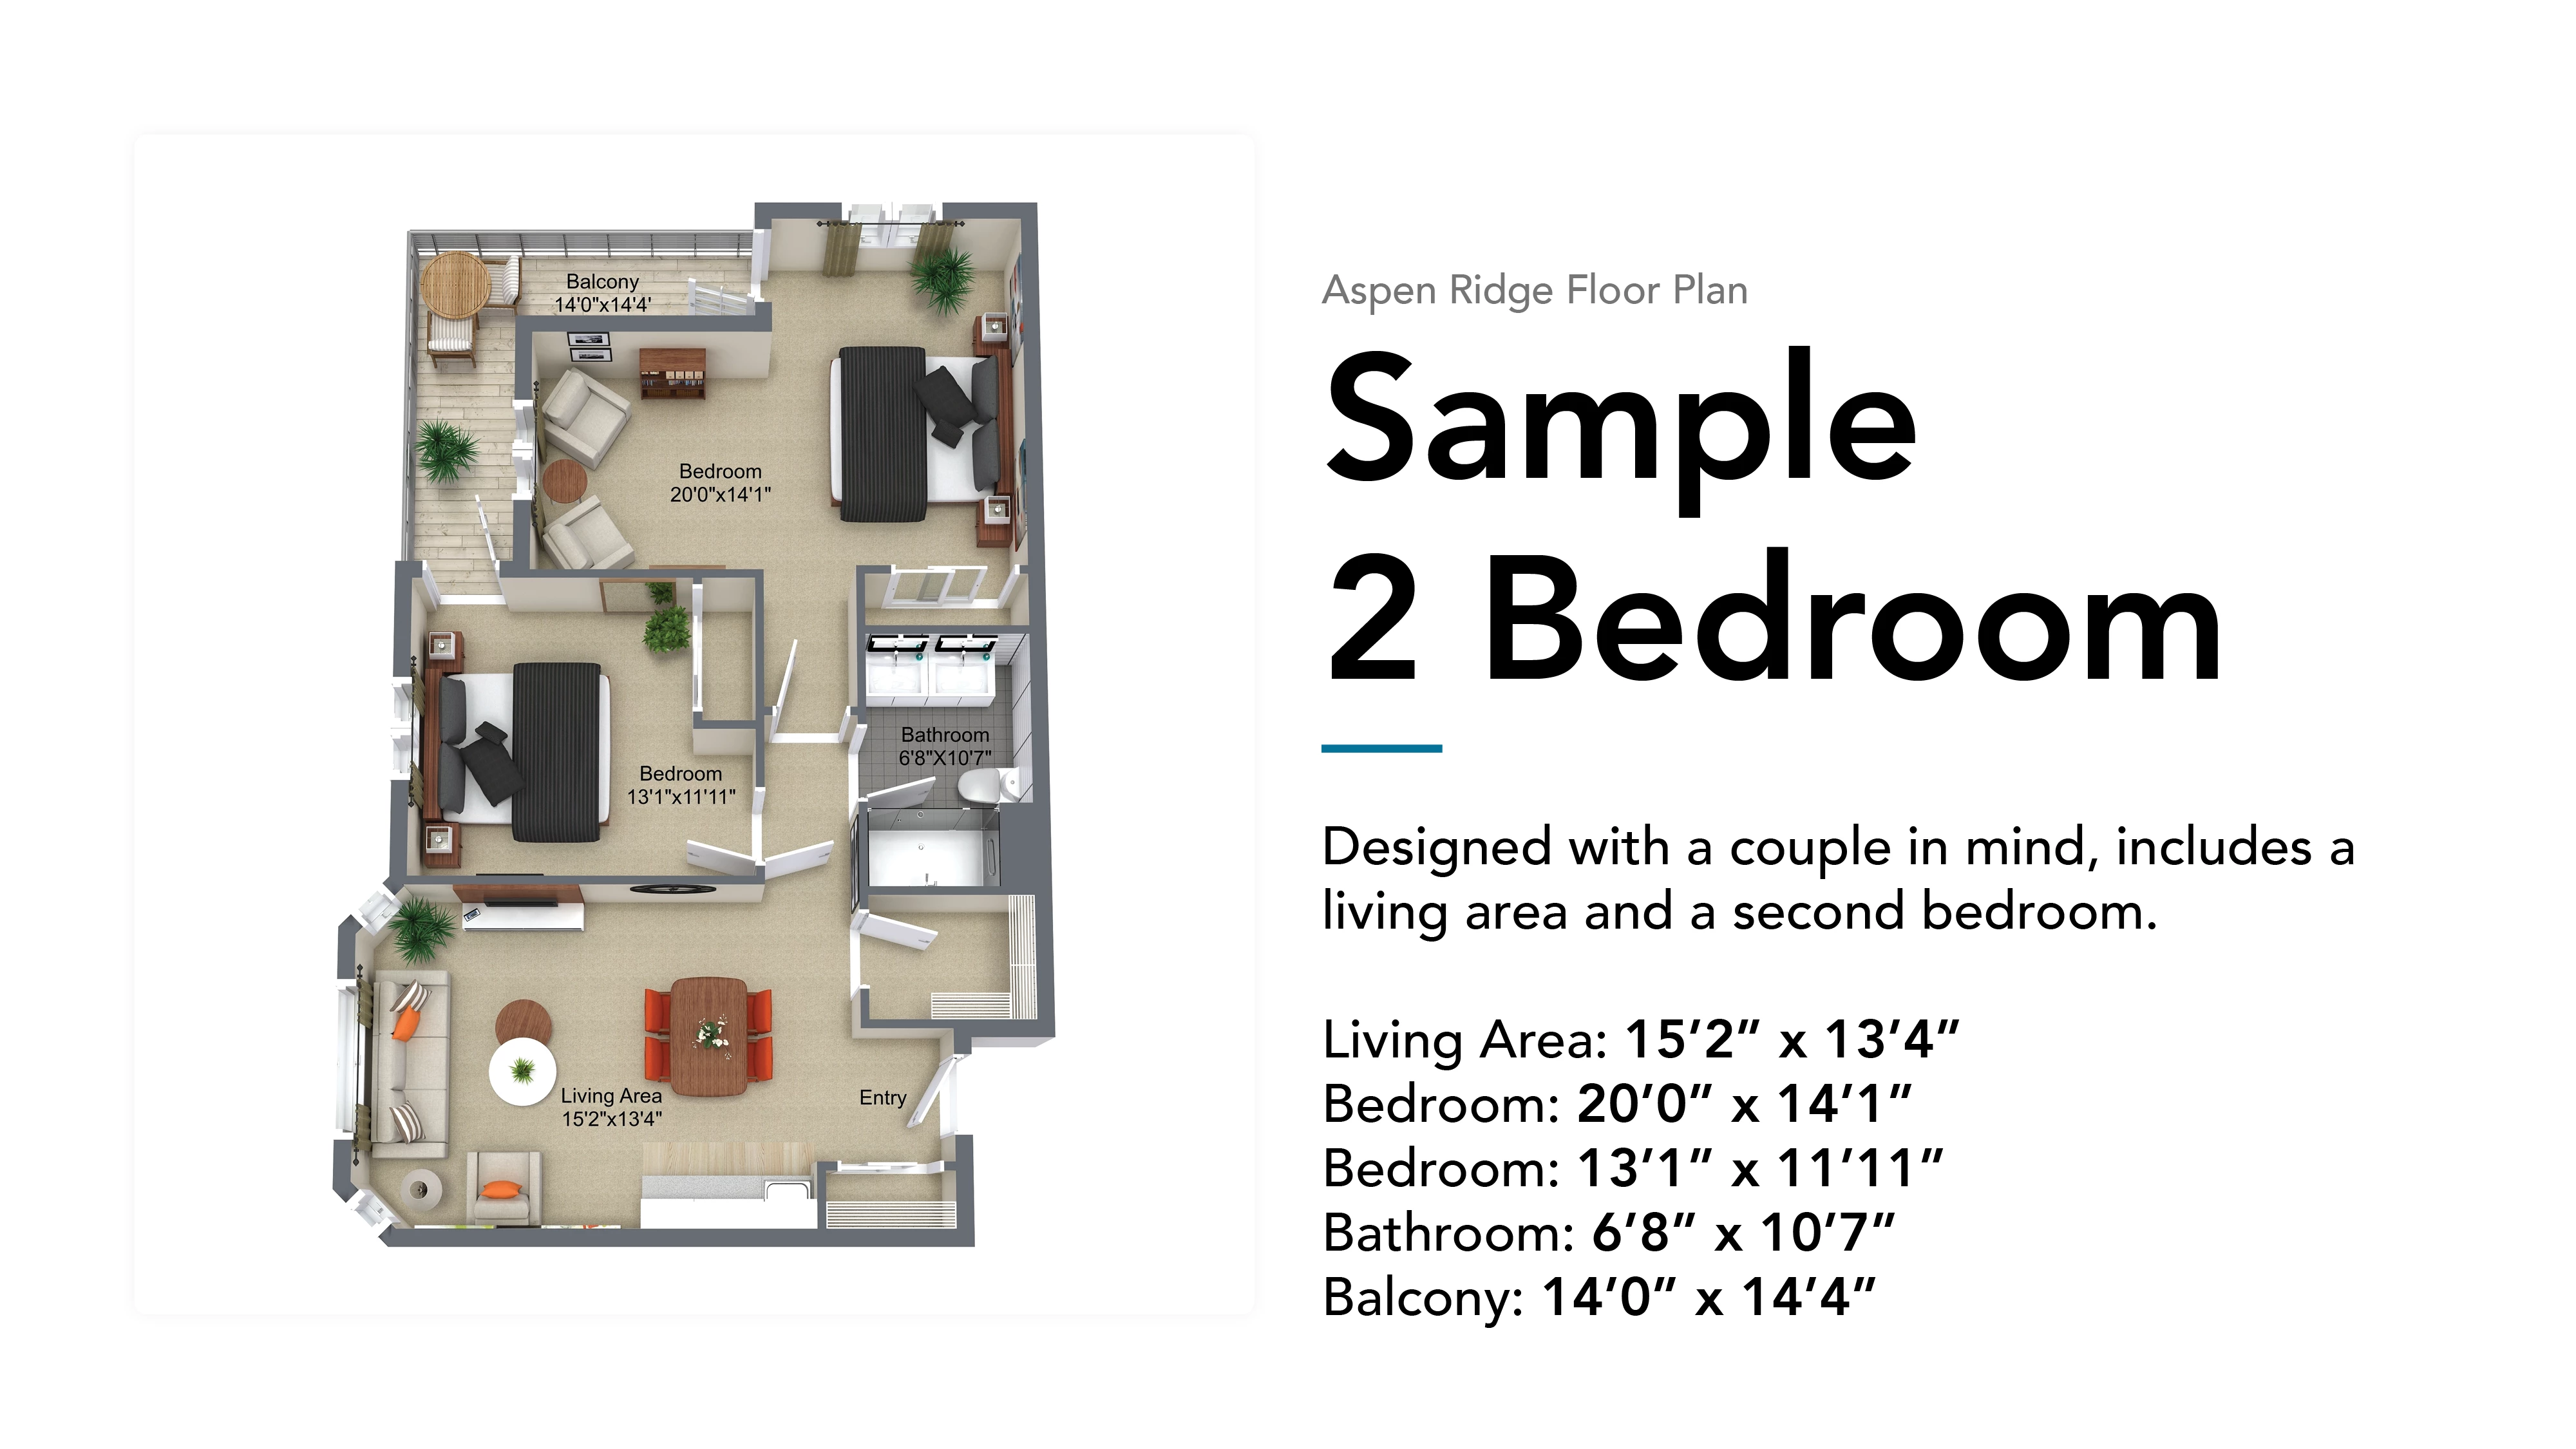 aspen ridge sample 2 bedroom floor plan